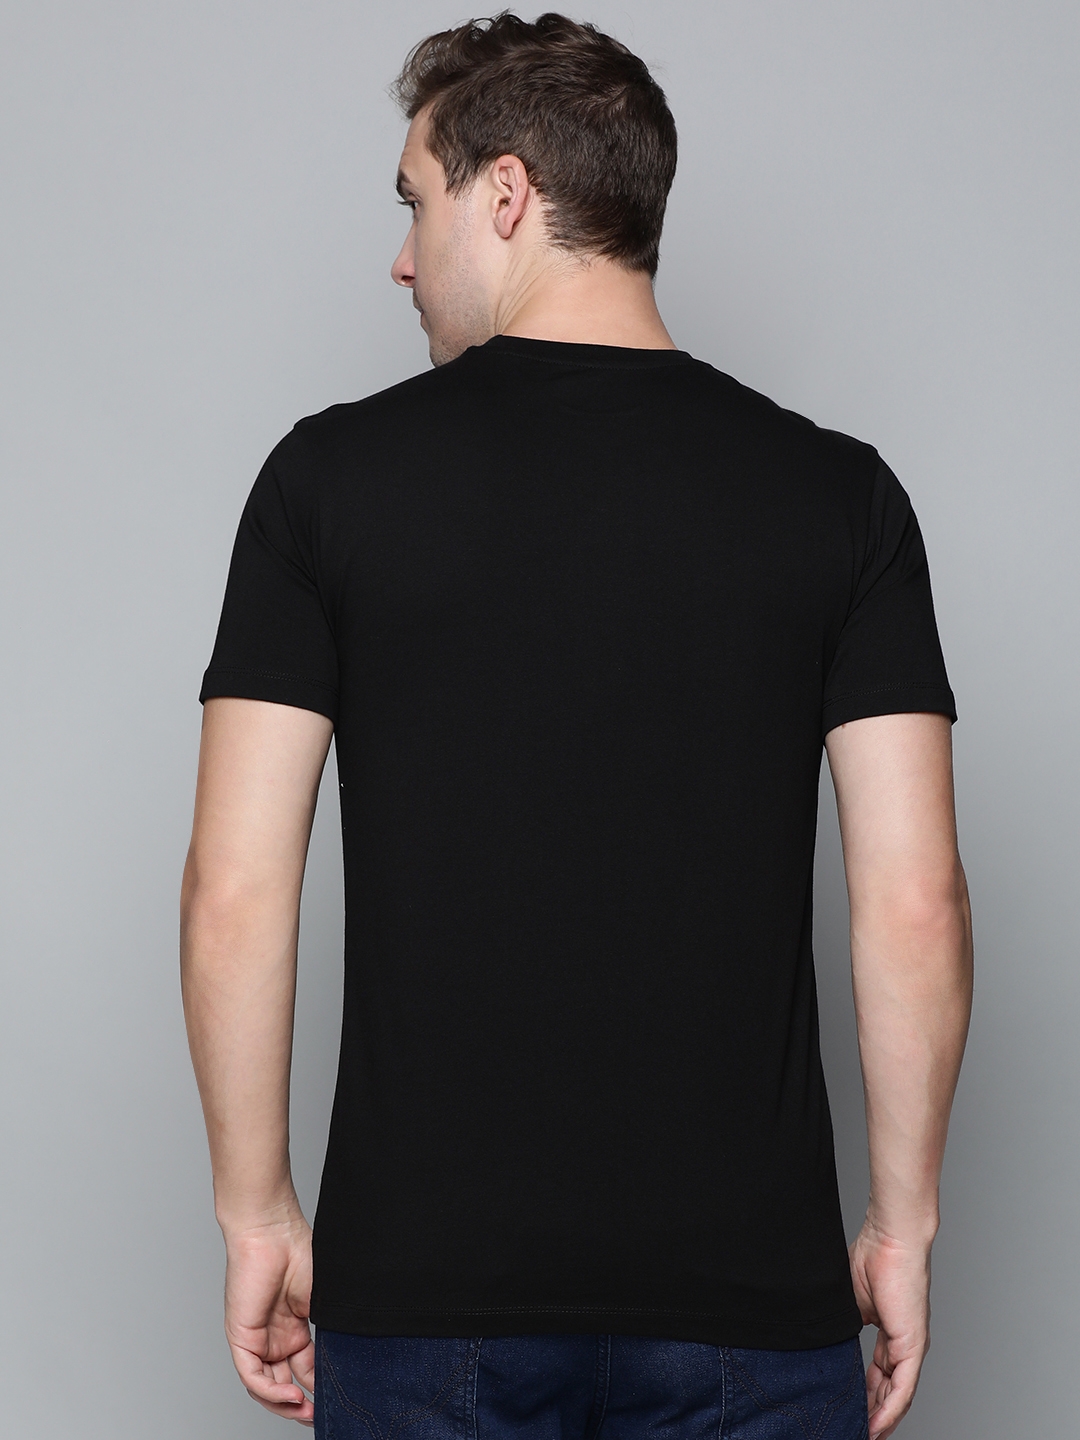 883 Police | Men's Black Cotton Graphics T-Shirt 3